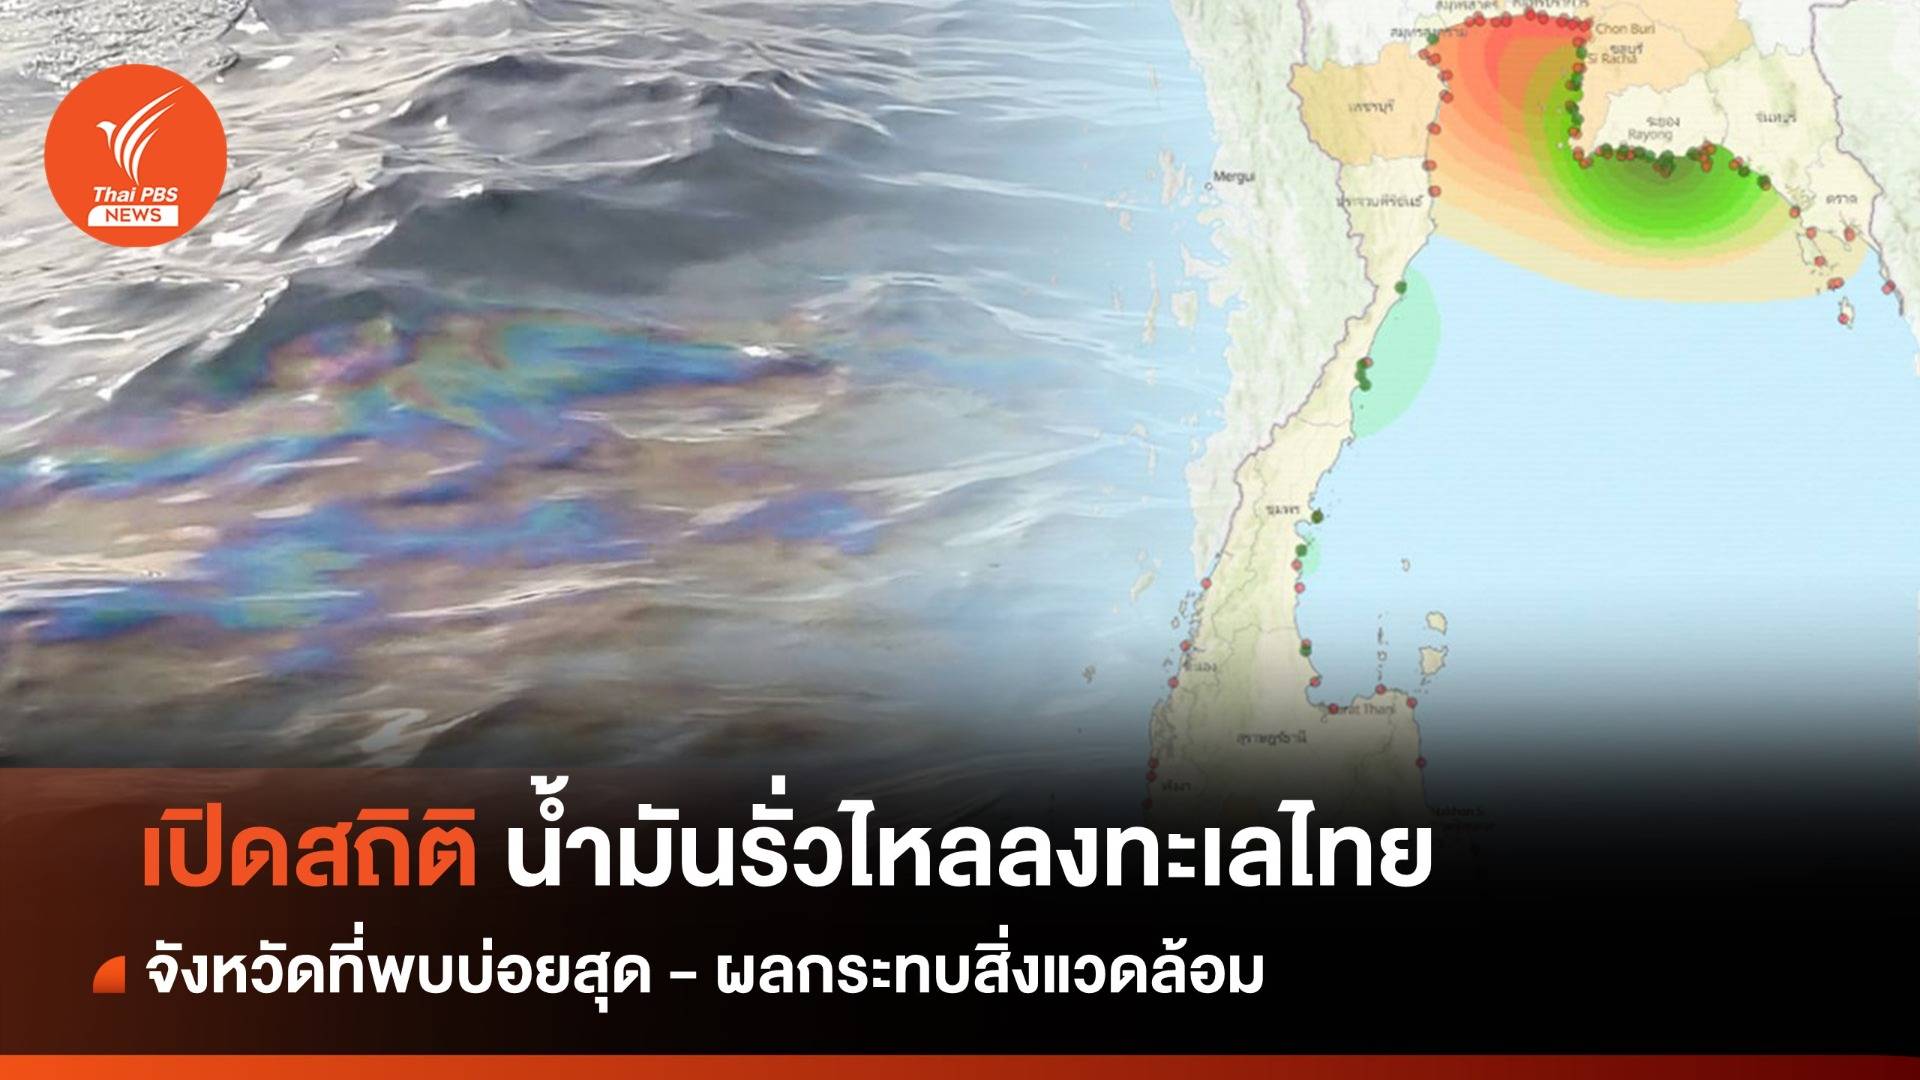 กางสถิติ ทะเลไทยเผชิญเหตุน้ำมันรั่ว จังหวัดที่พบบ่อยสุด